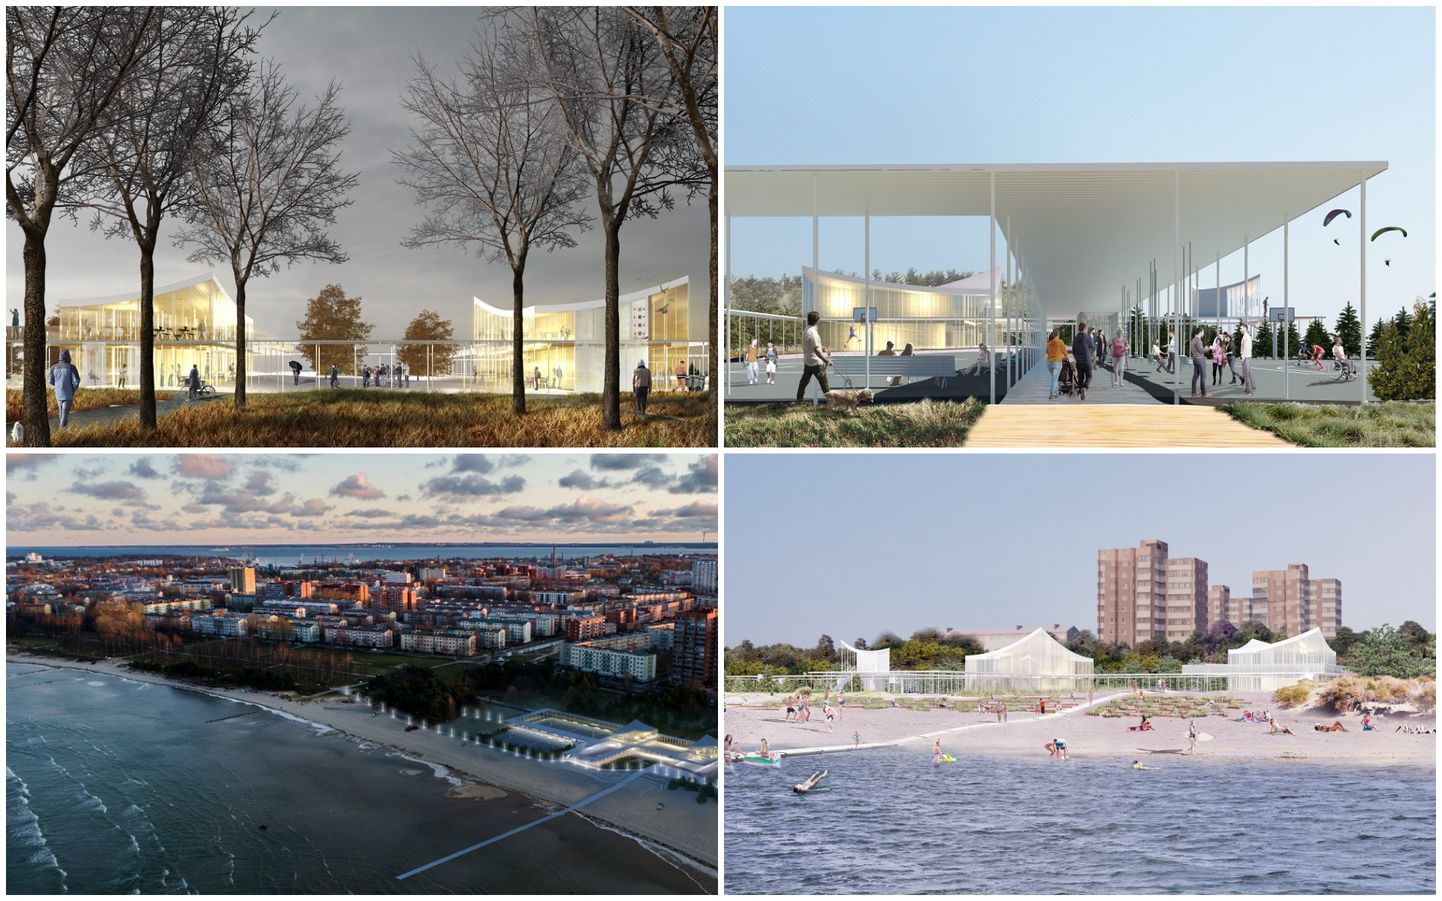 Жюри, состоящее из представителей города Таллинна и специалистов в области архитектуры, назвало победителя архитектурного конкурса на пляжное здание Штромки.